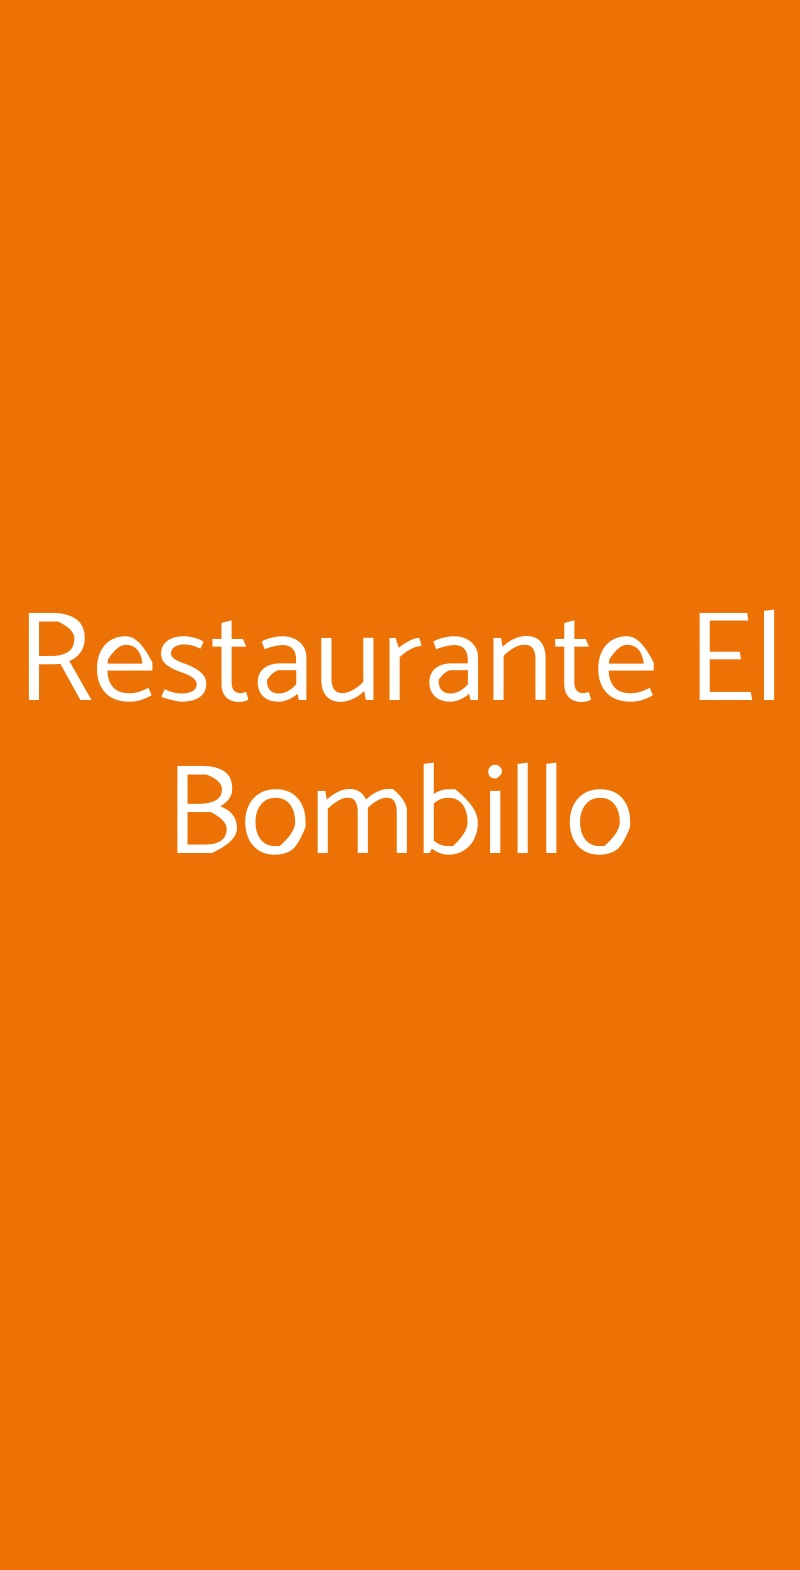 Restaurante El Bombillo Milano menù 1 pagina